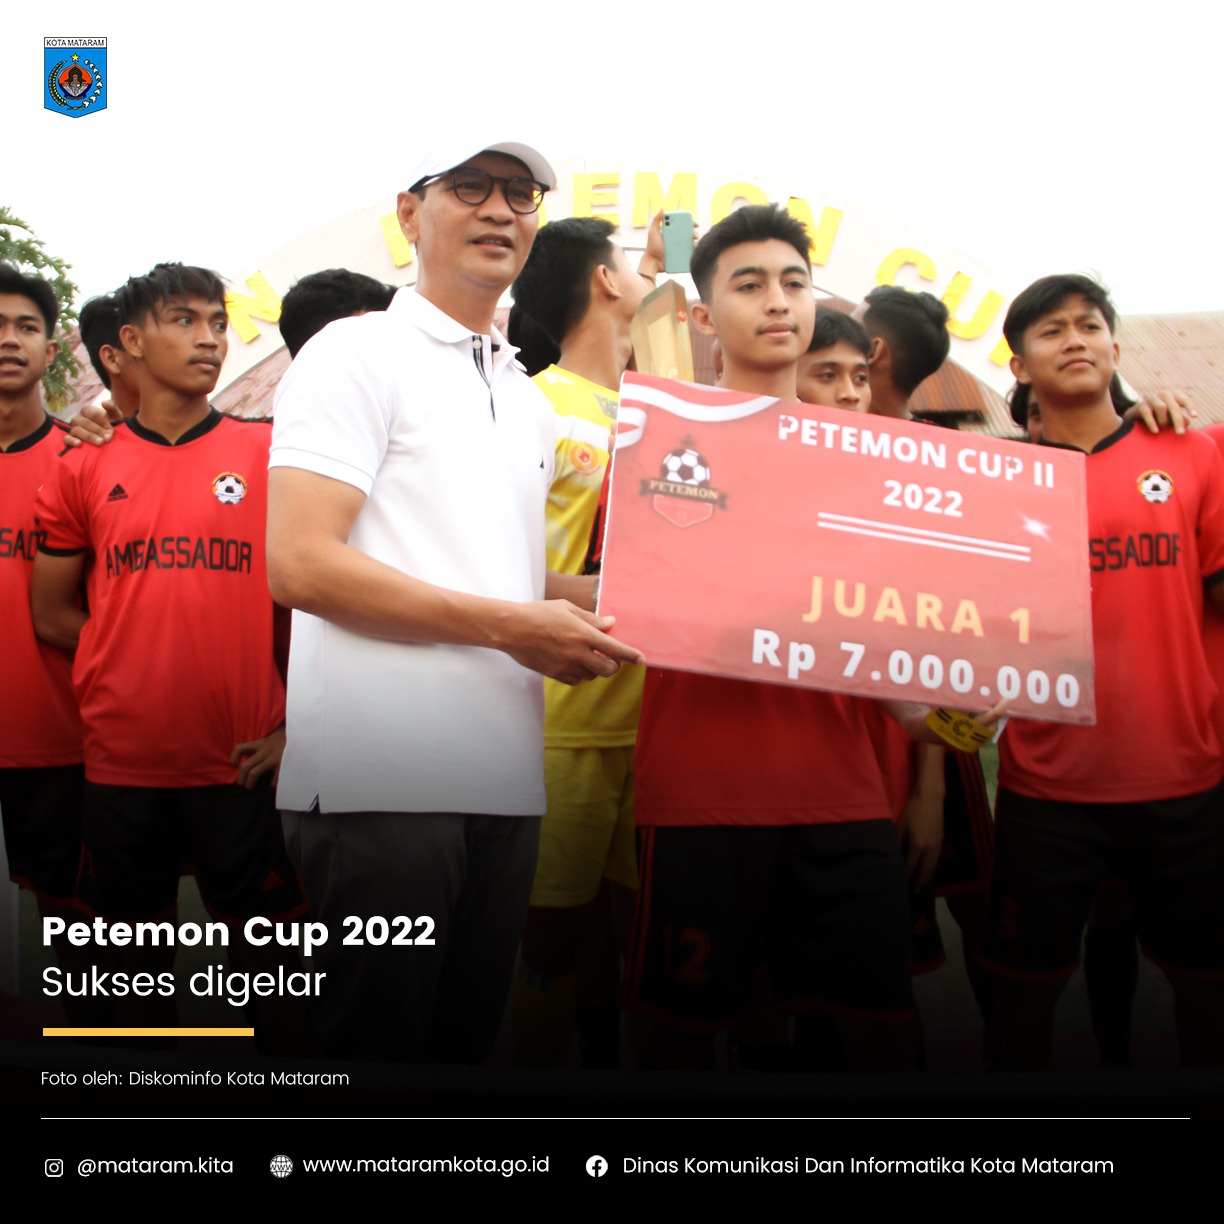 Petemon Cup 2022 Sukses digelar